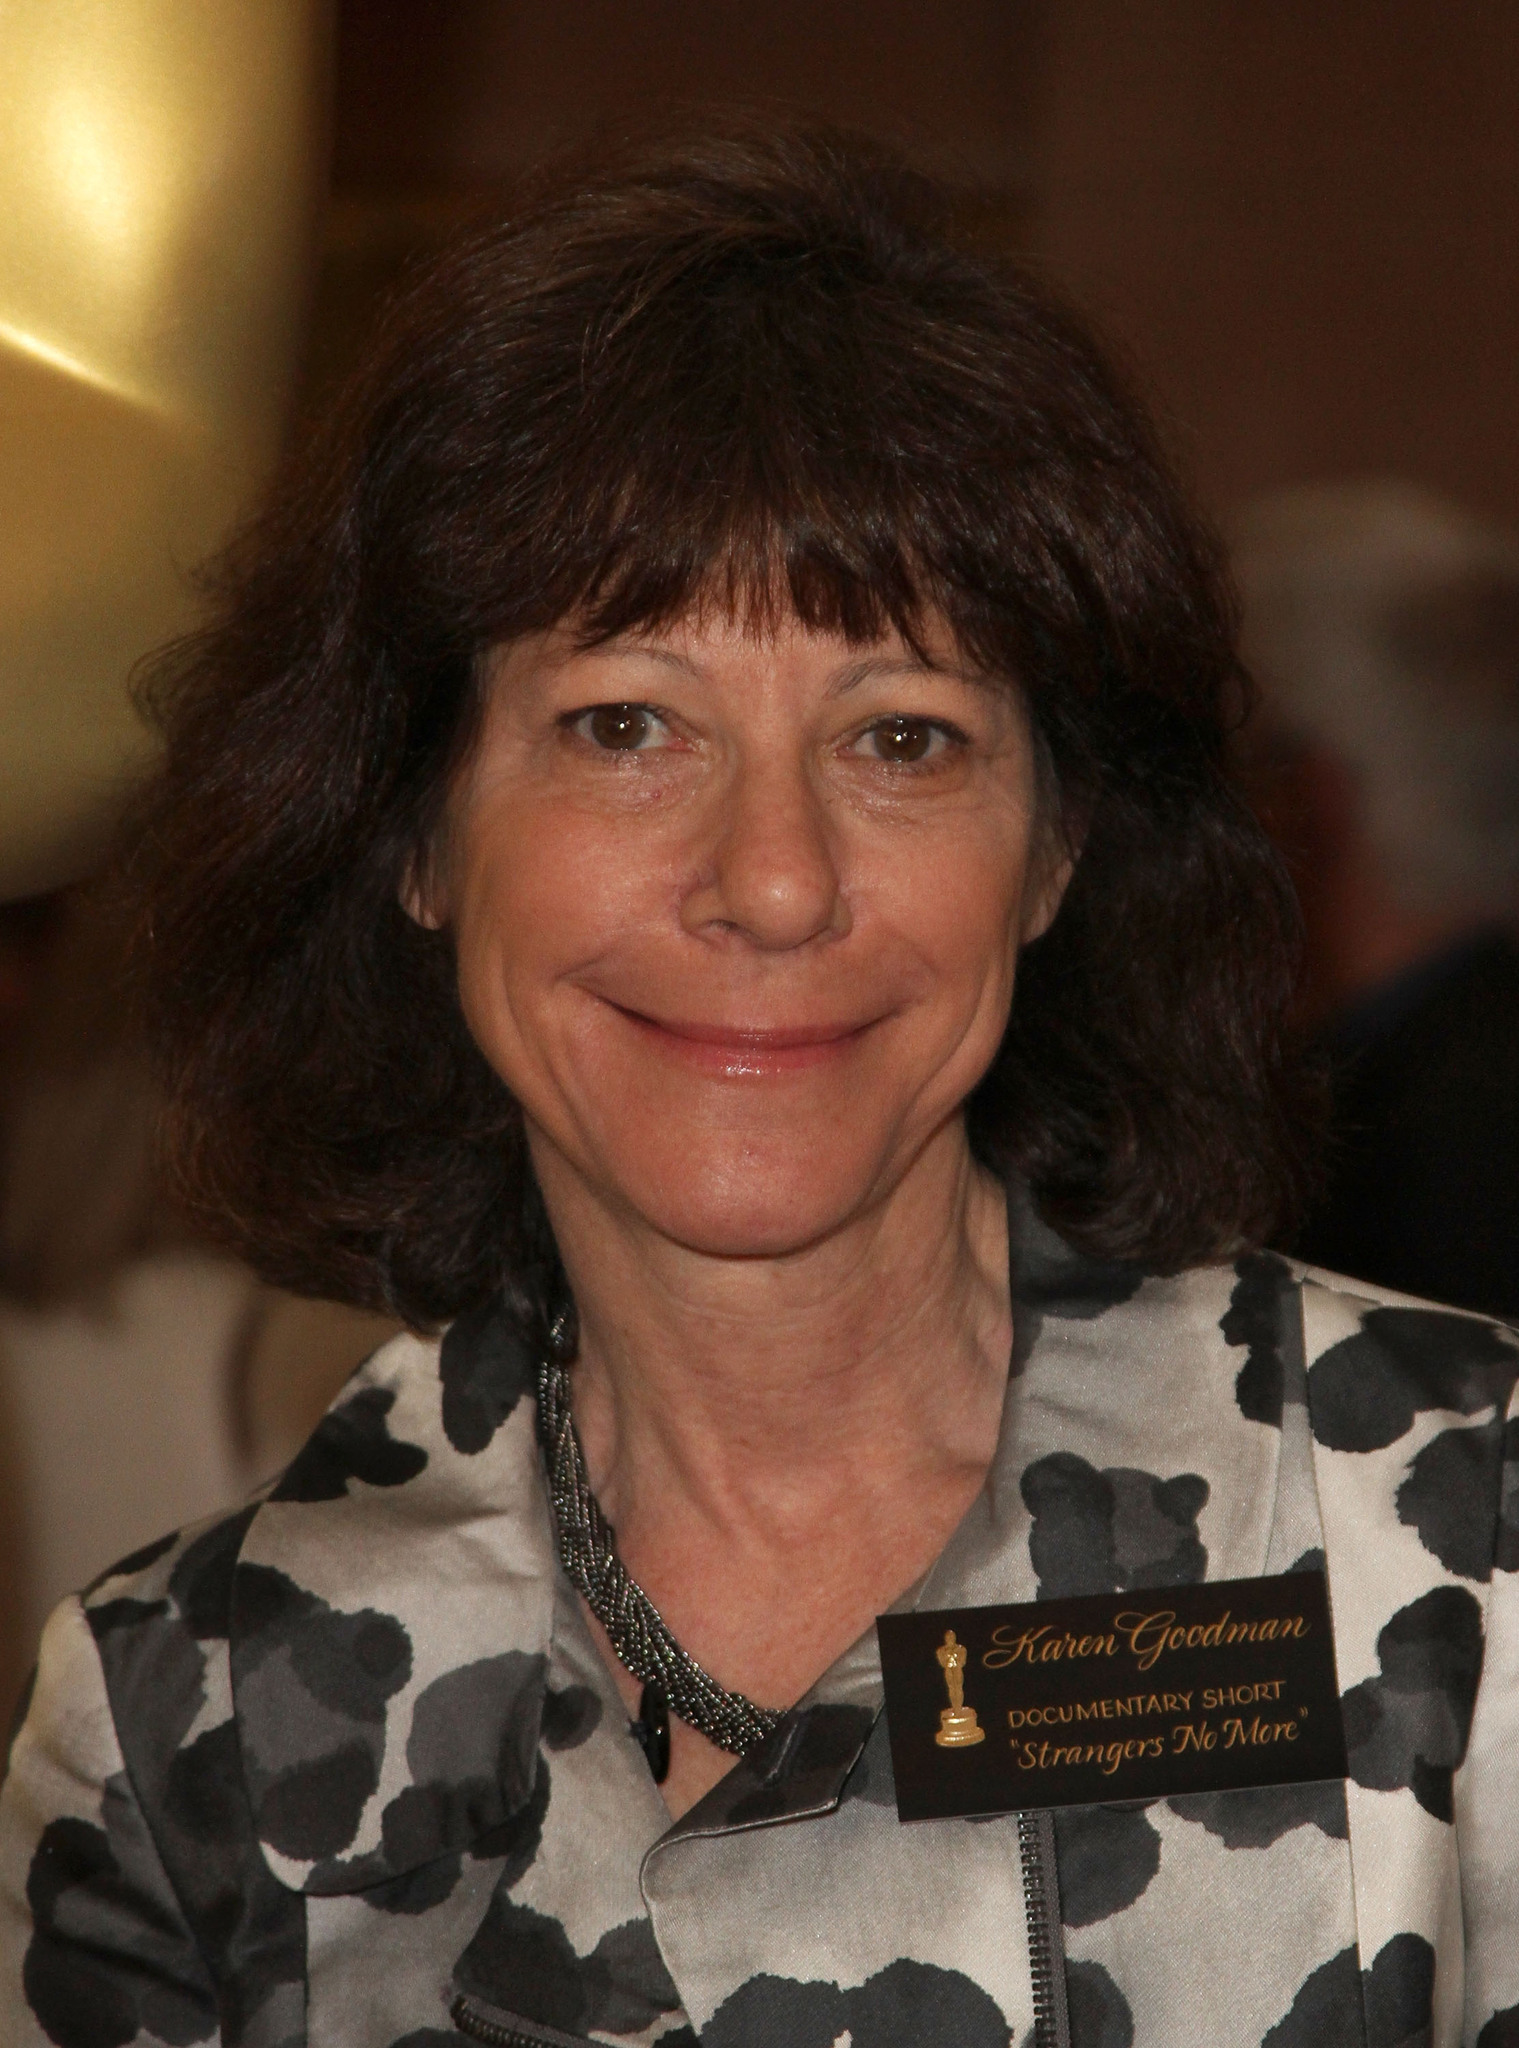 Karen Goodman